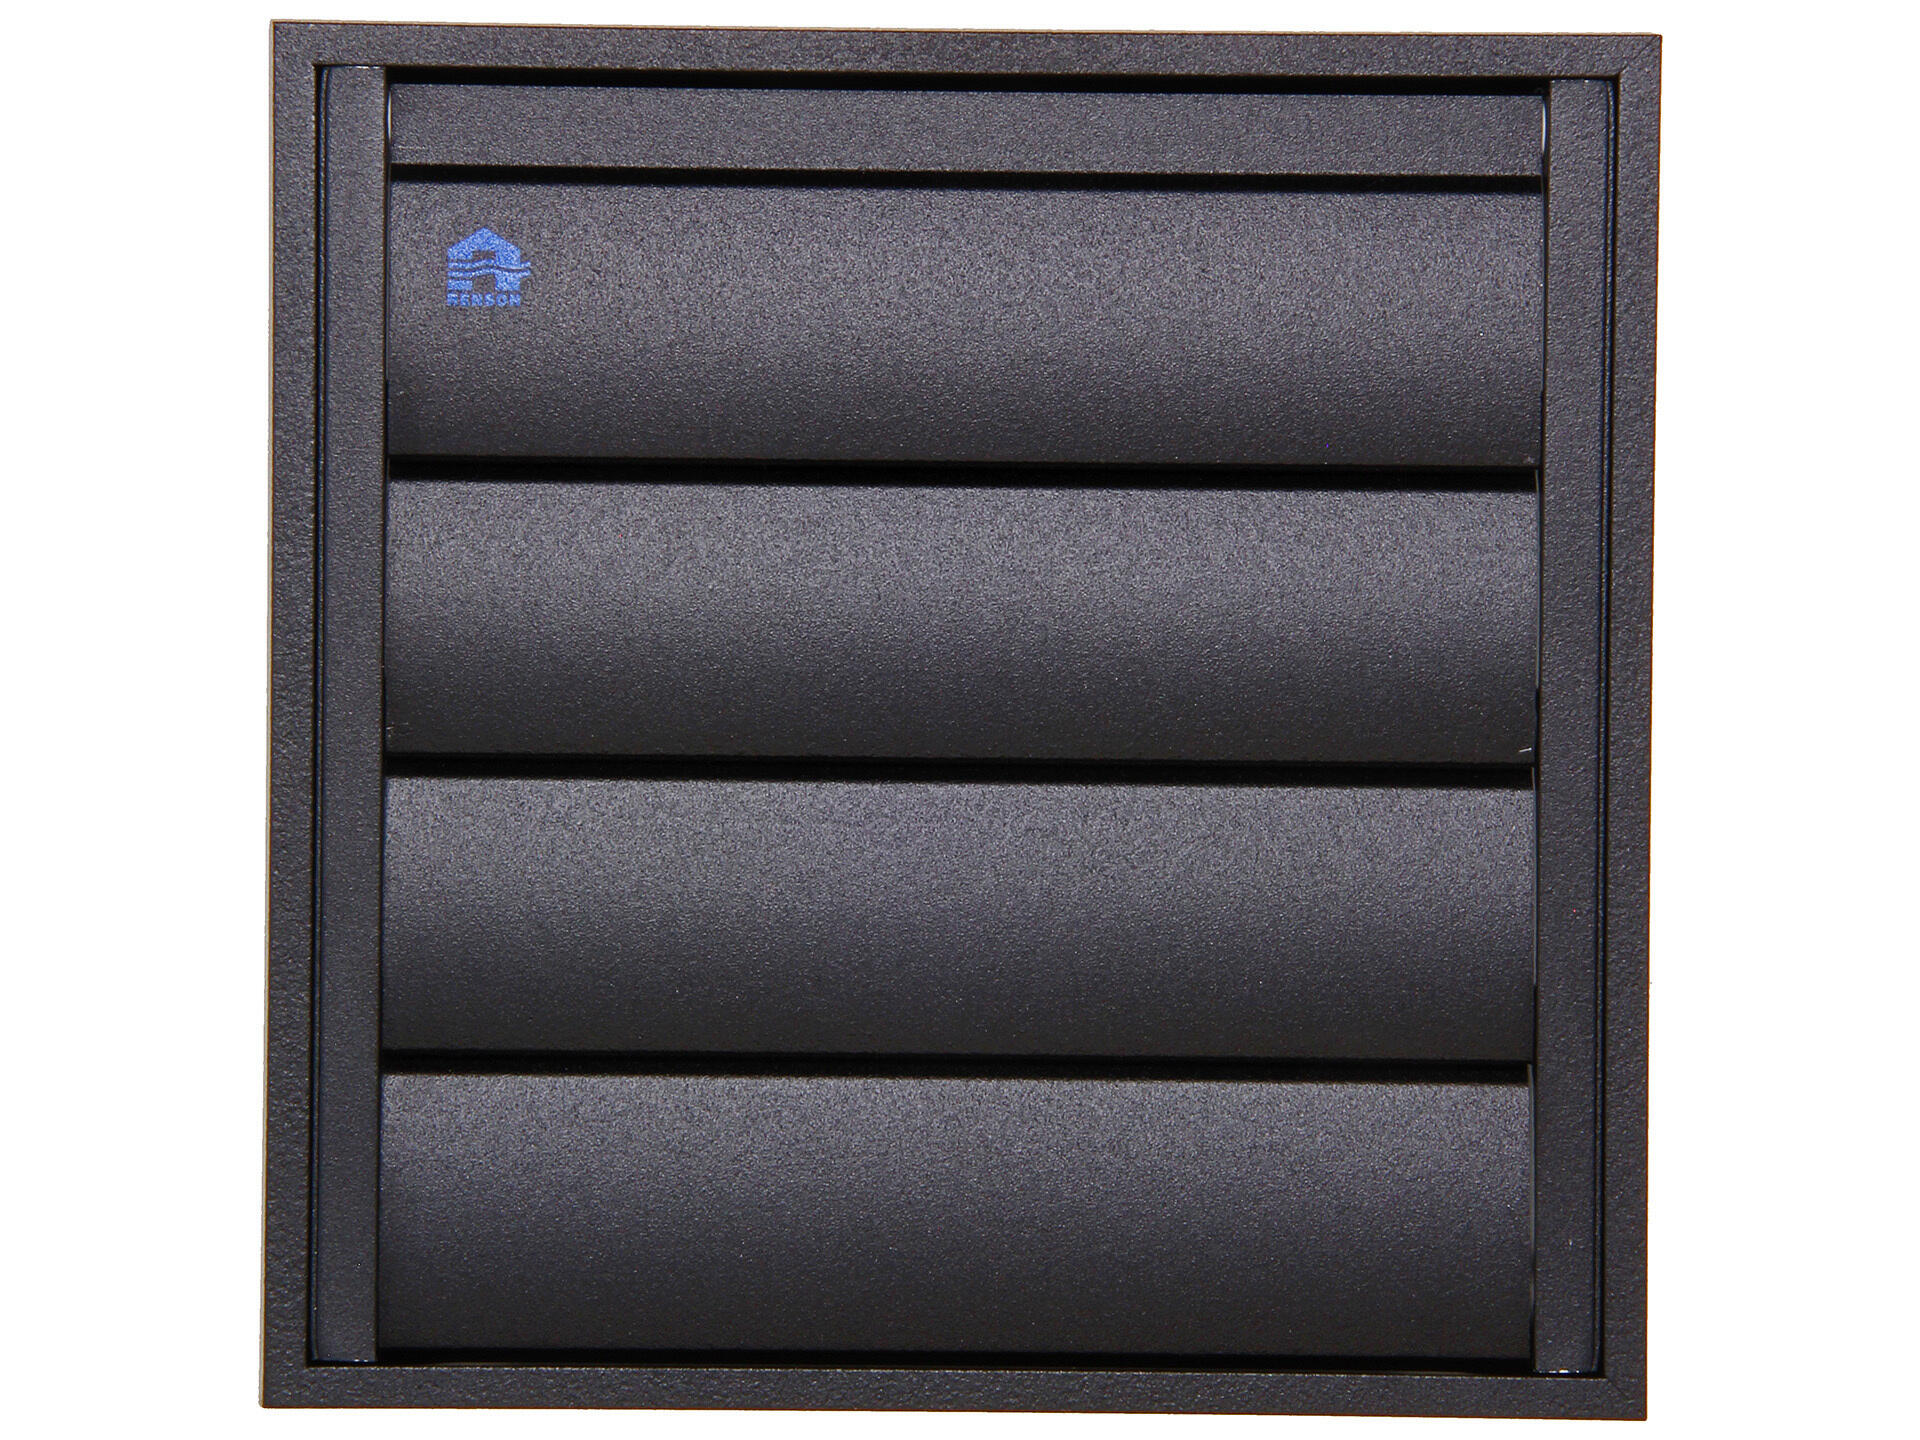 Renson grille de hotte 173x173 mm aluminium noir